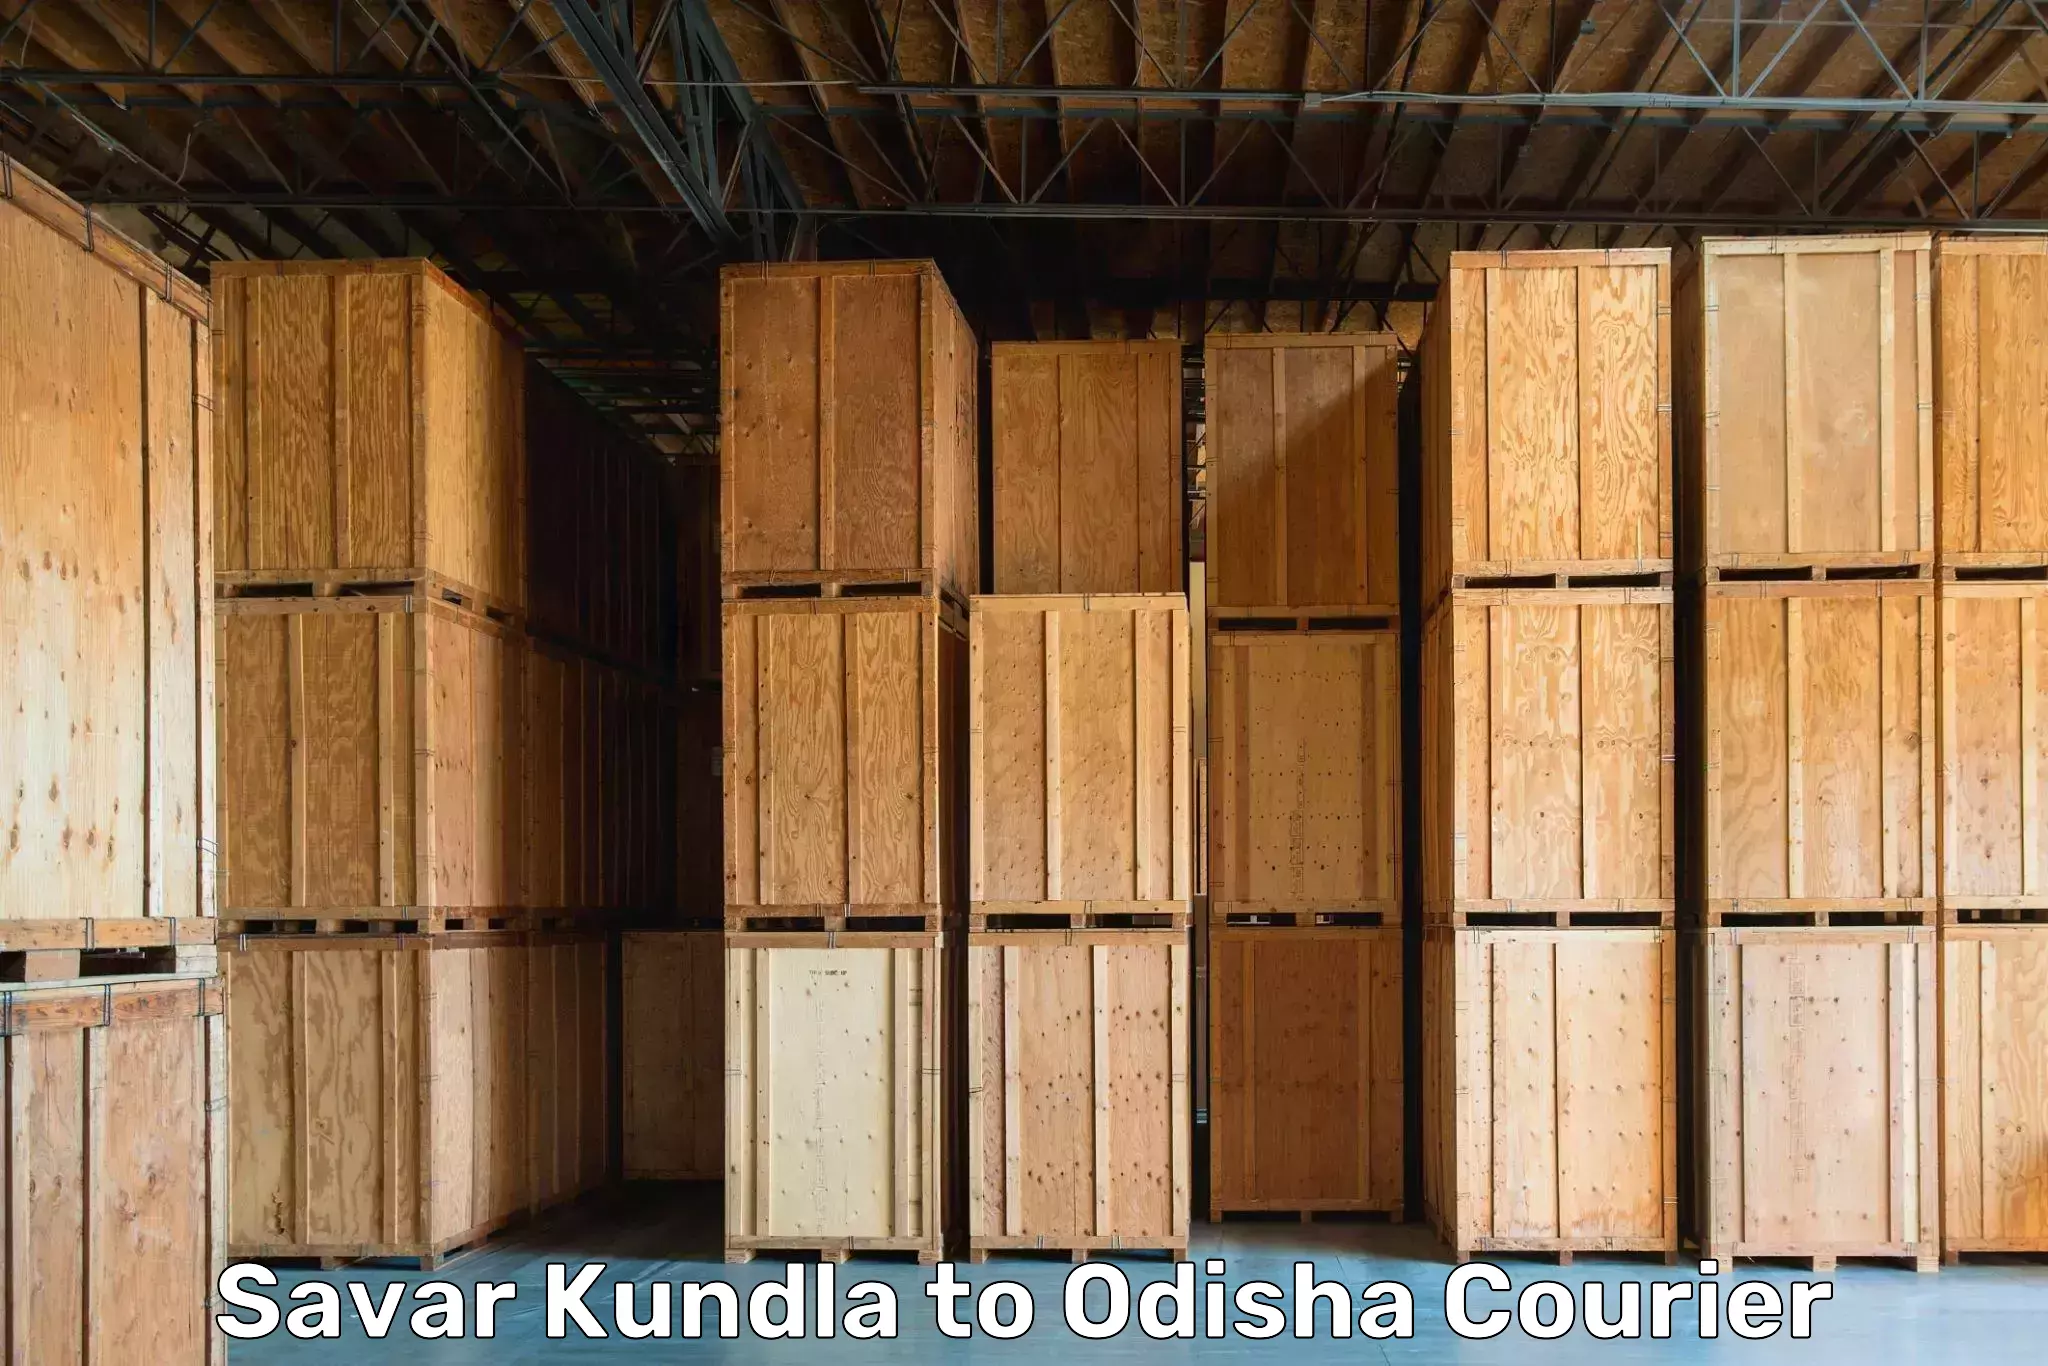 Furniture transport solutions Savar Kundla to Bonth